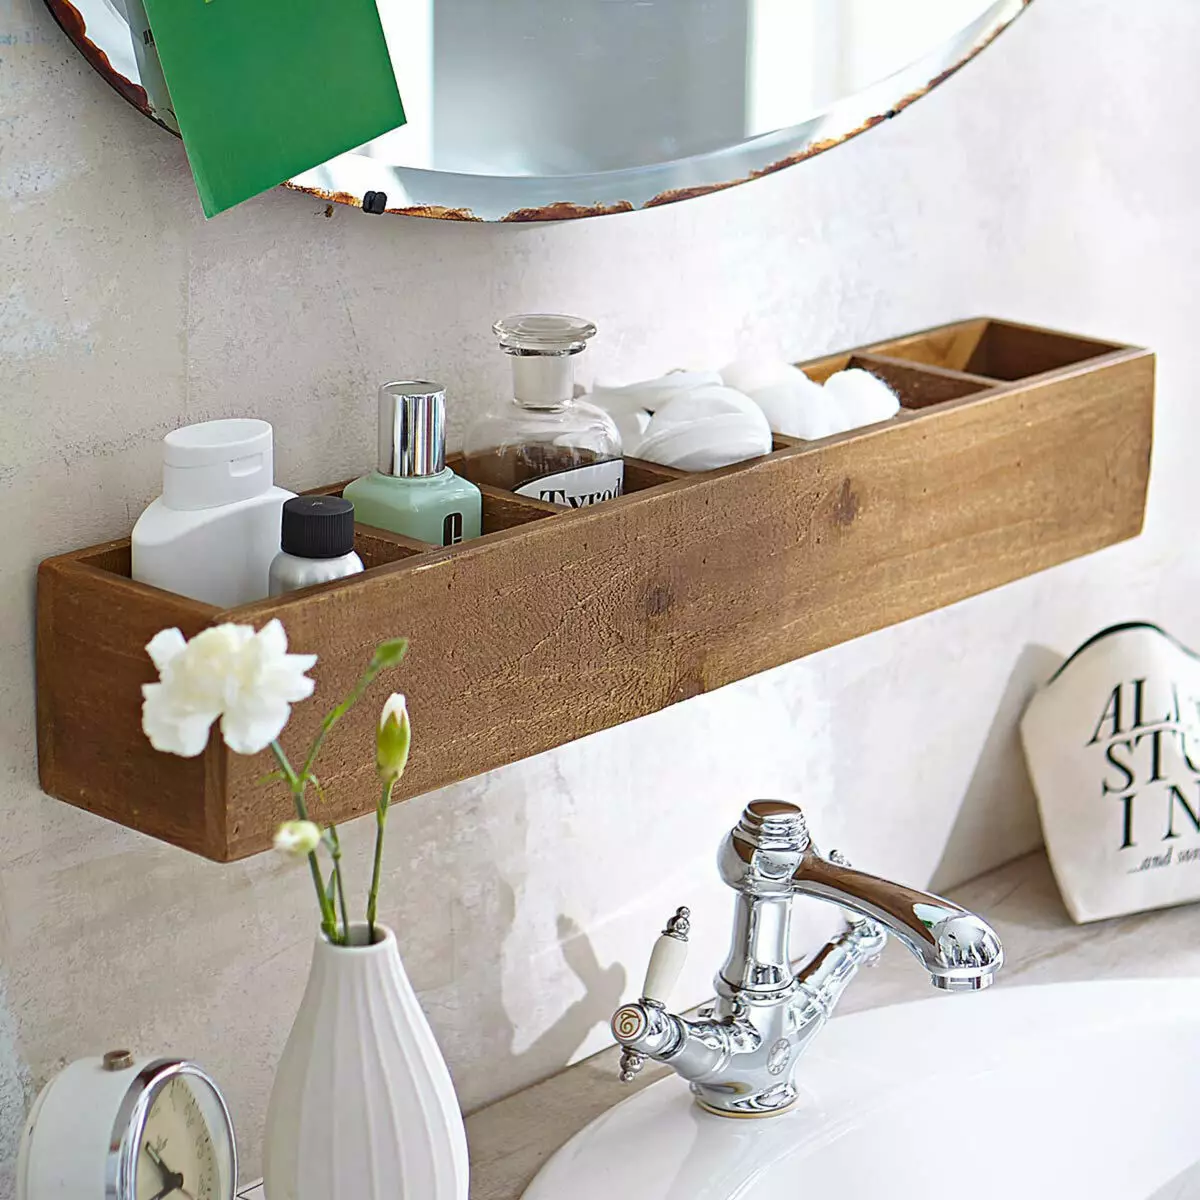 Houten planke foar de badkamer: monteard houten planken yn 'e badkeamer, hoeke en oanrjocht, oare opsjes 10407_3